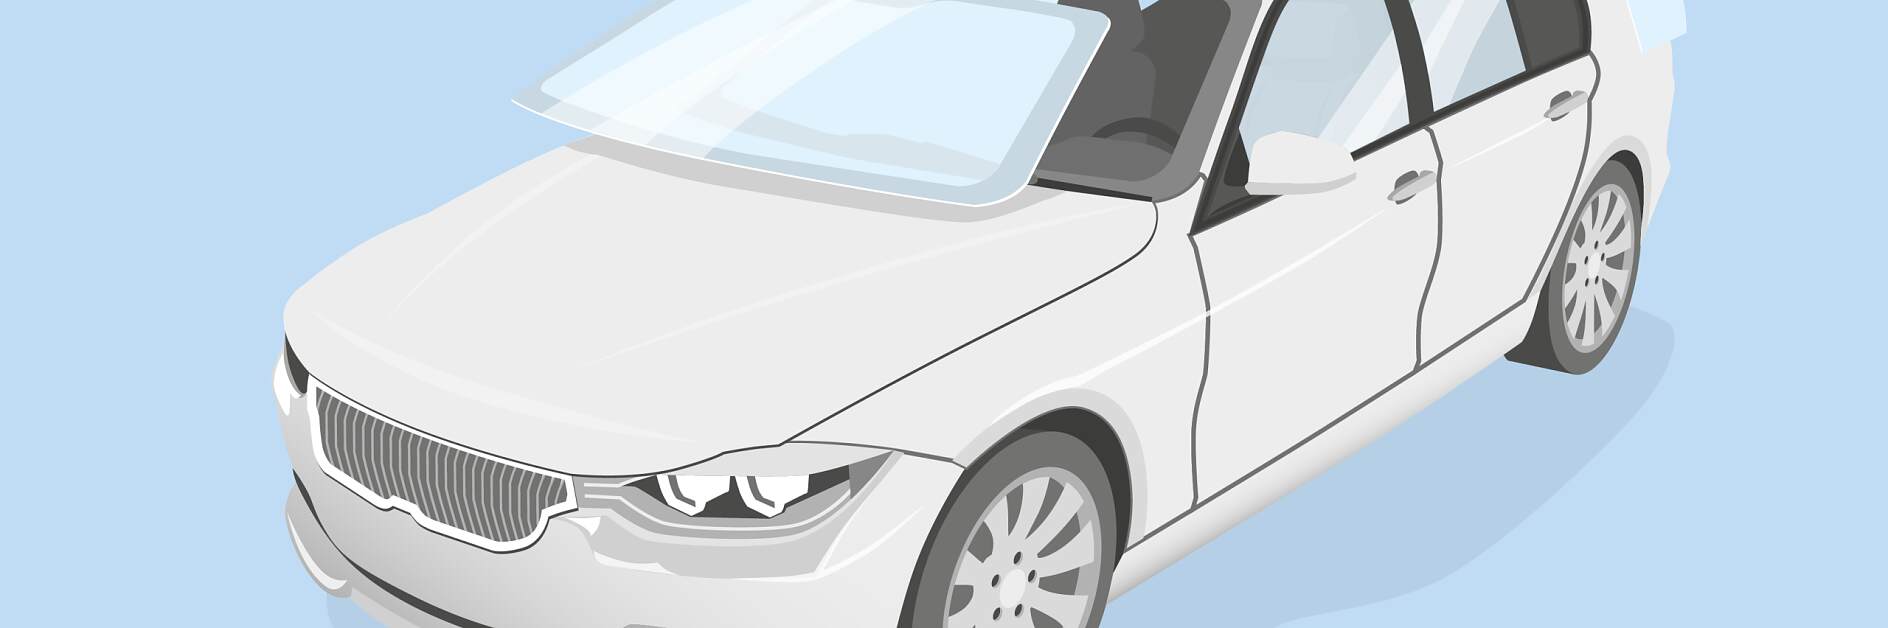 Soluzioni di nastri adesivi per fissaggio del vetro nel settore automobilistico